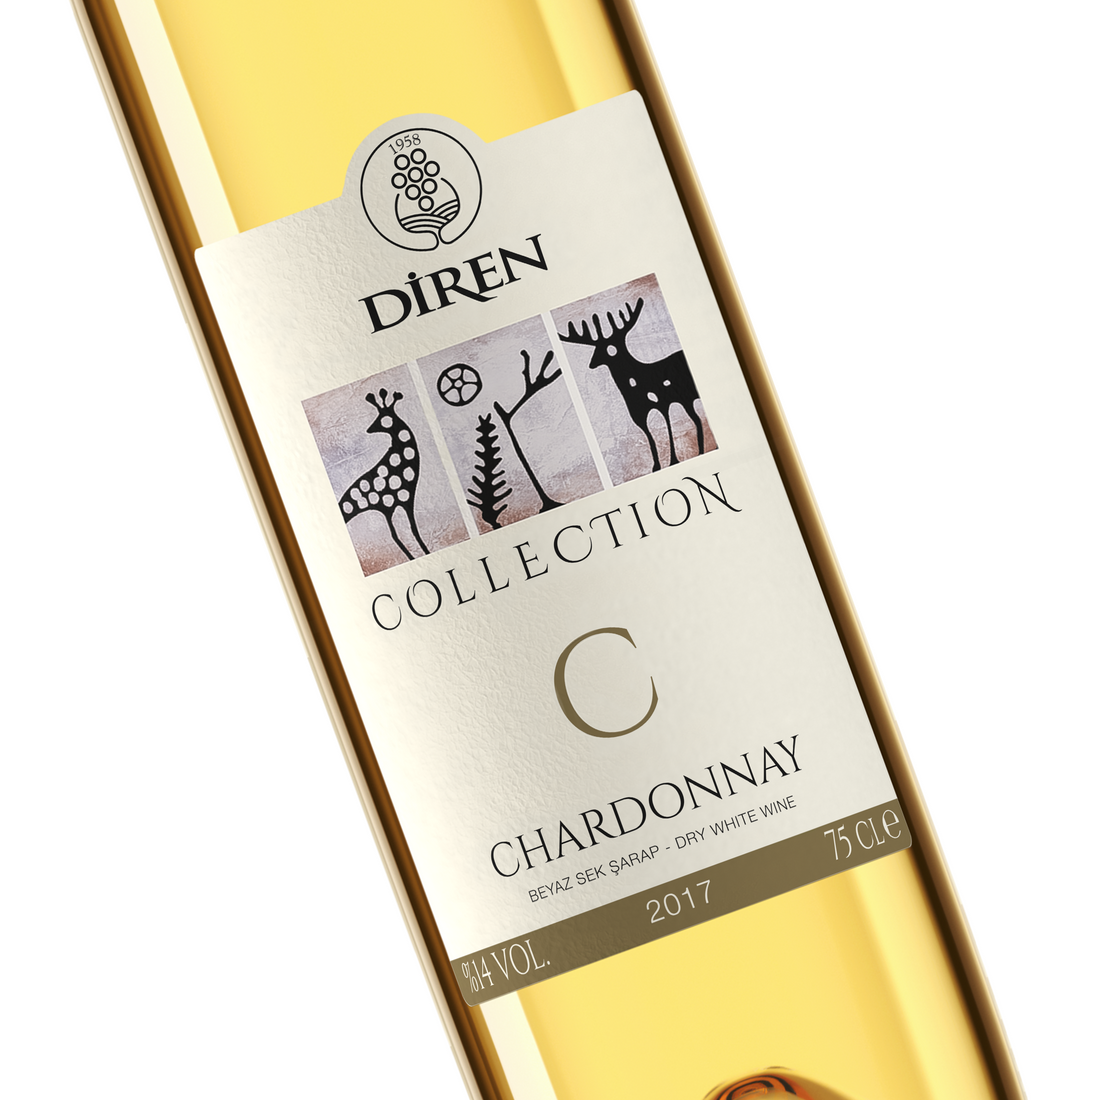 Diren Collection Chardonnay 750ml Beyaz Sek Şarap